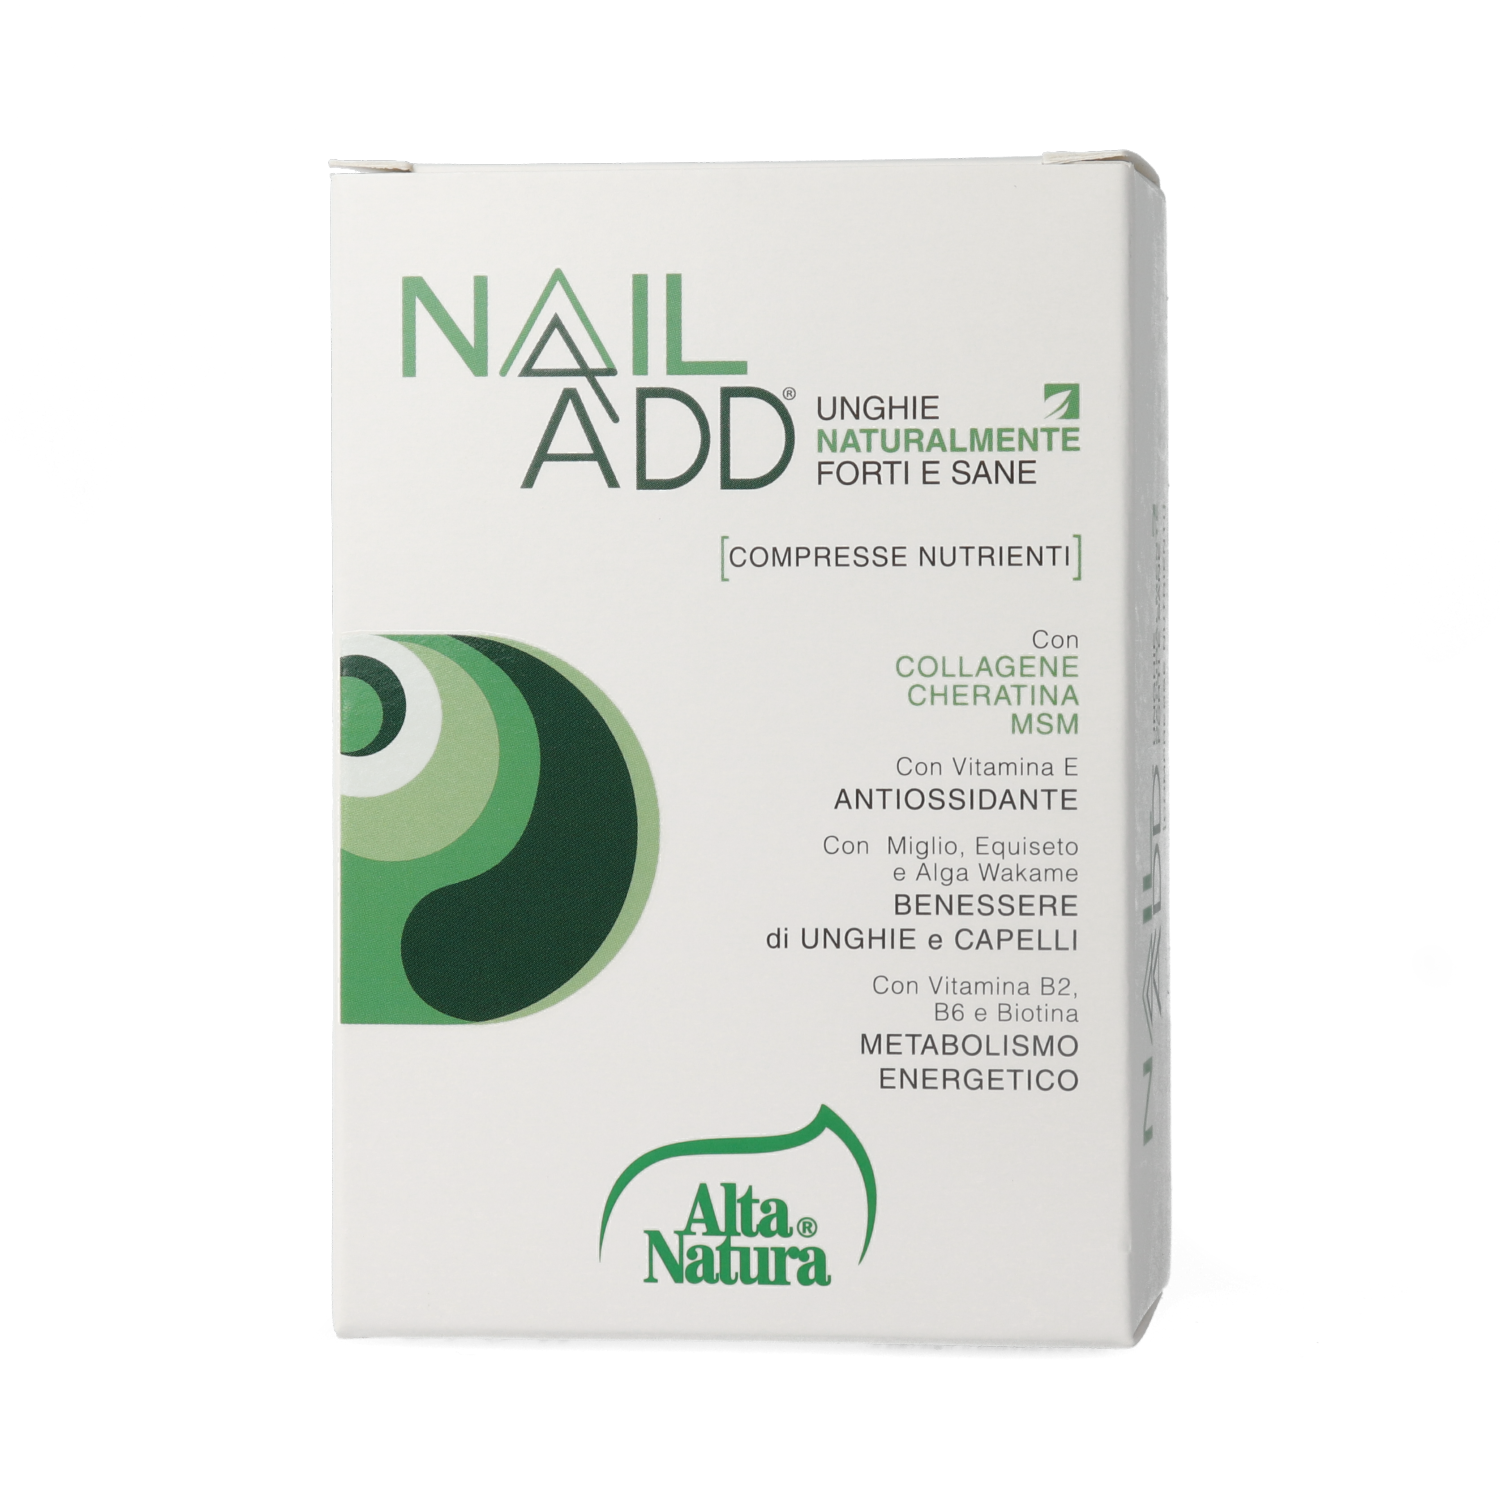 Image of Nail Add Compresse Nutrienti Alta Natura 30 Compresse